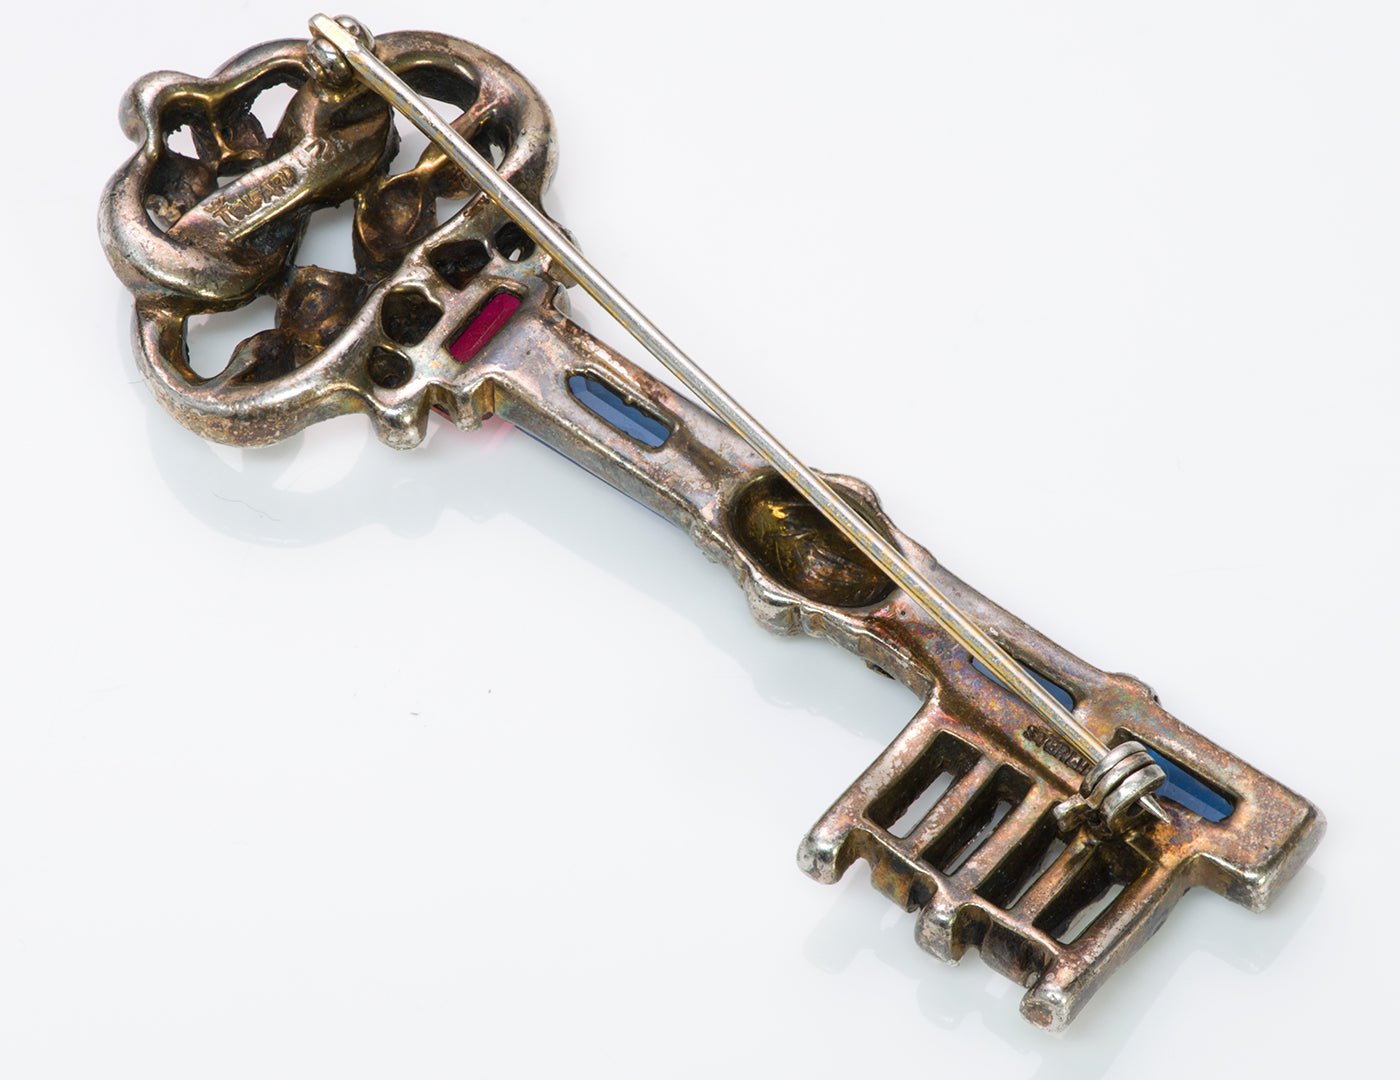 Alfred Philippe Trifari 1940’s Blue Crystal Key Brooch